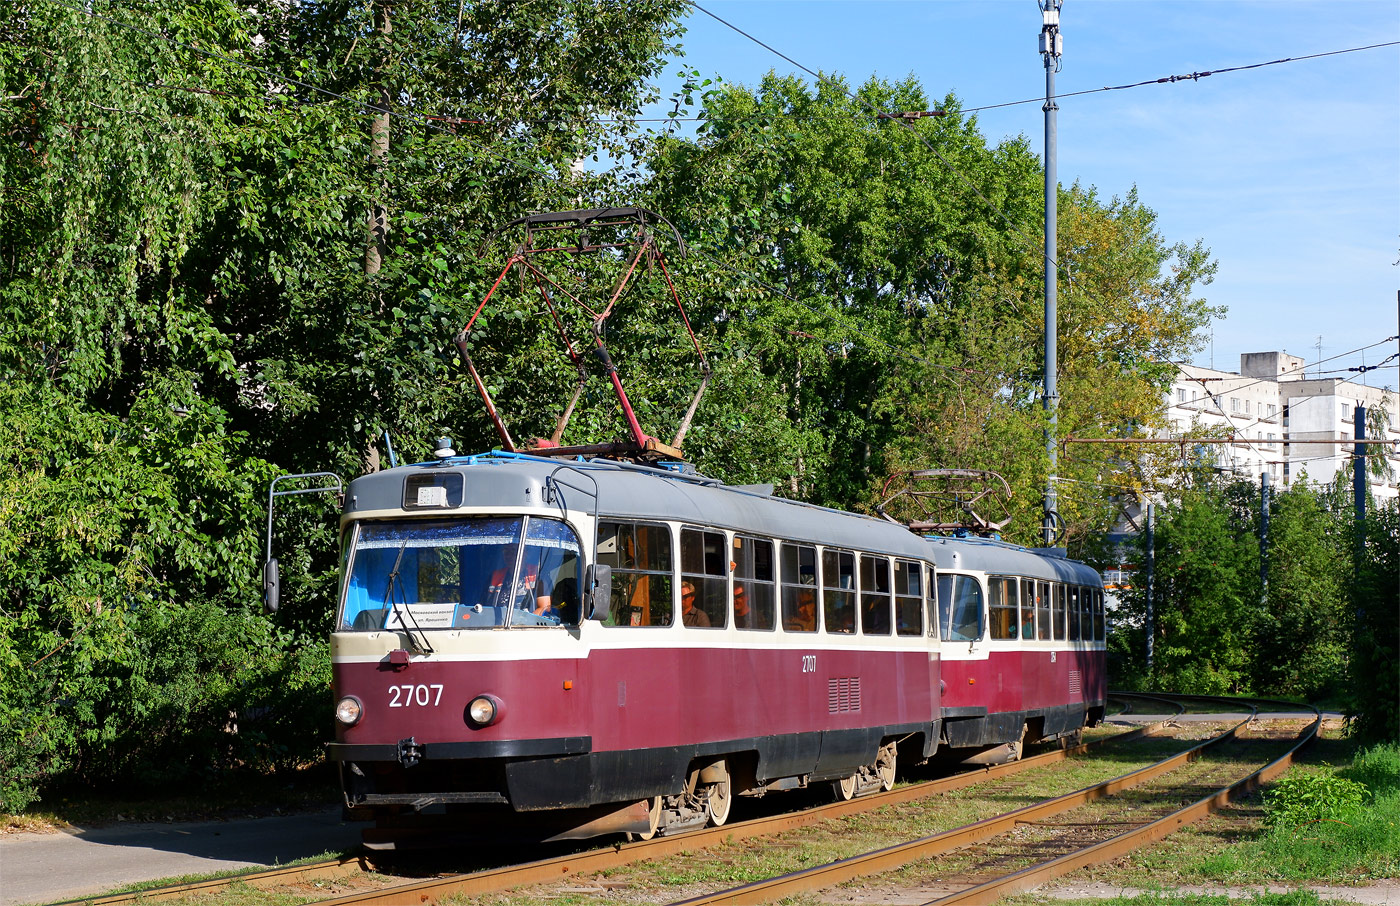 Нижний Новгород, МТТЧ № 2707 — Фото — Городской электротранспорт